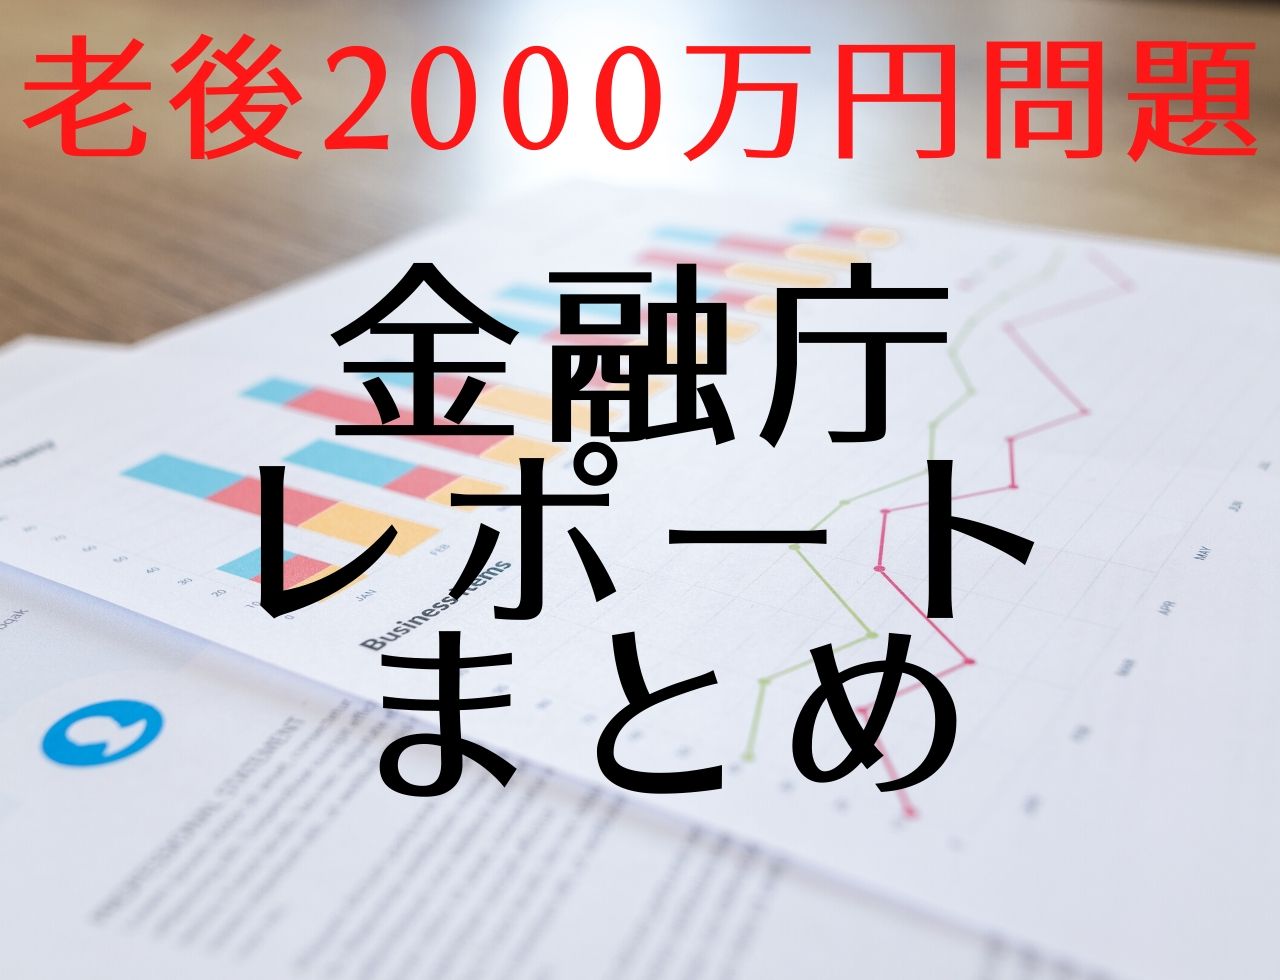 金融庁レポート「老後2000万円問題」